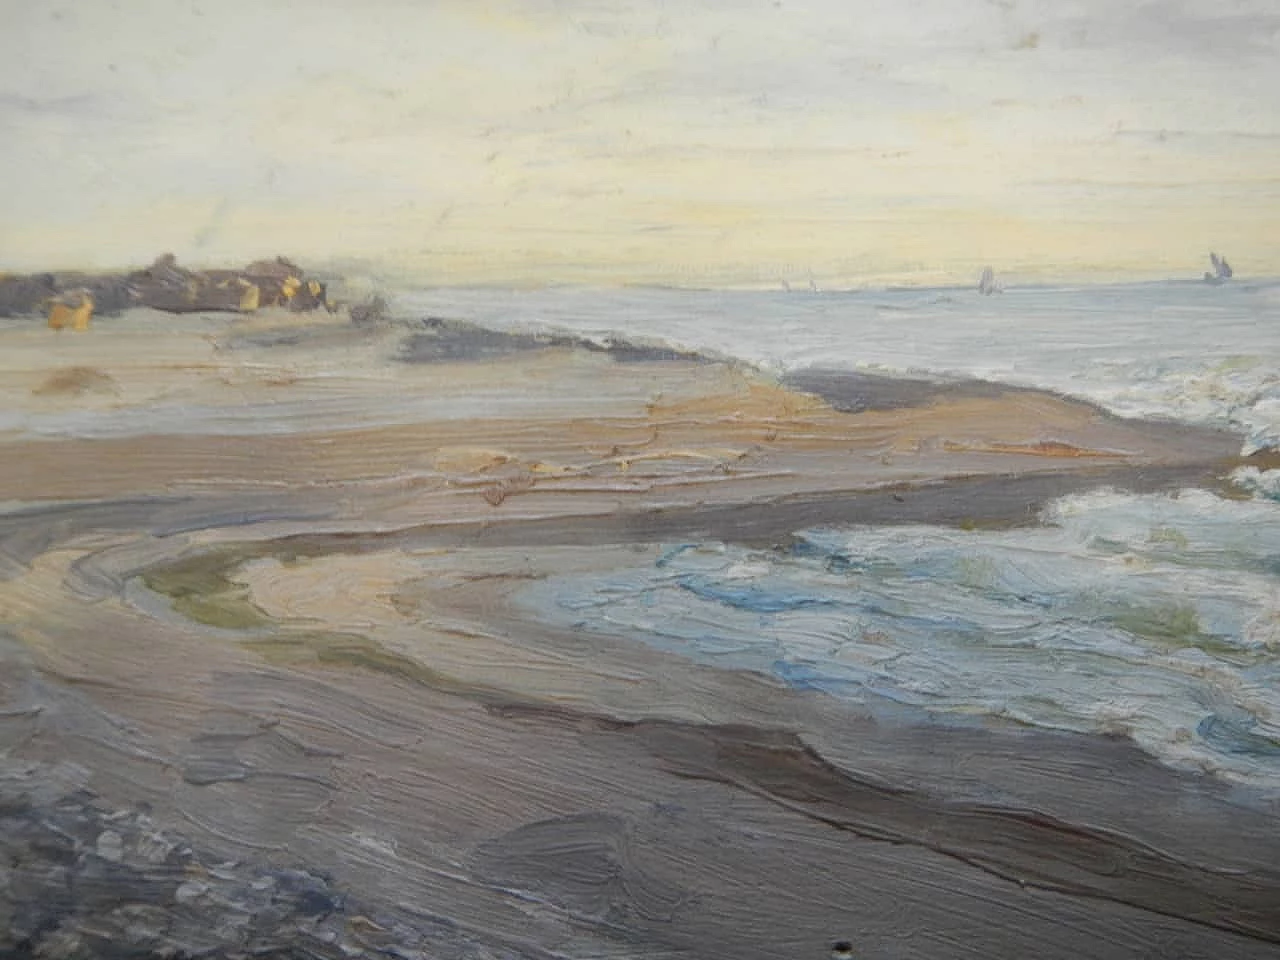 Des Champs, oceano, dipinto su legno, inizio ‘900 2